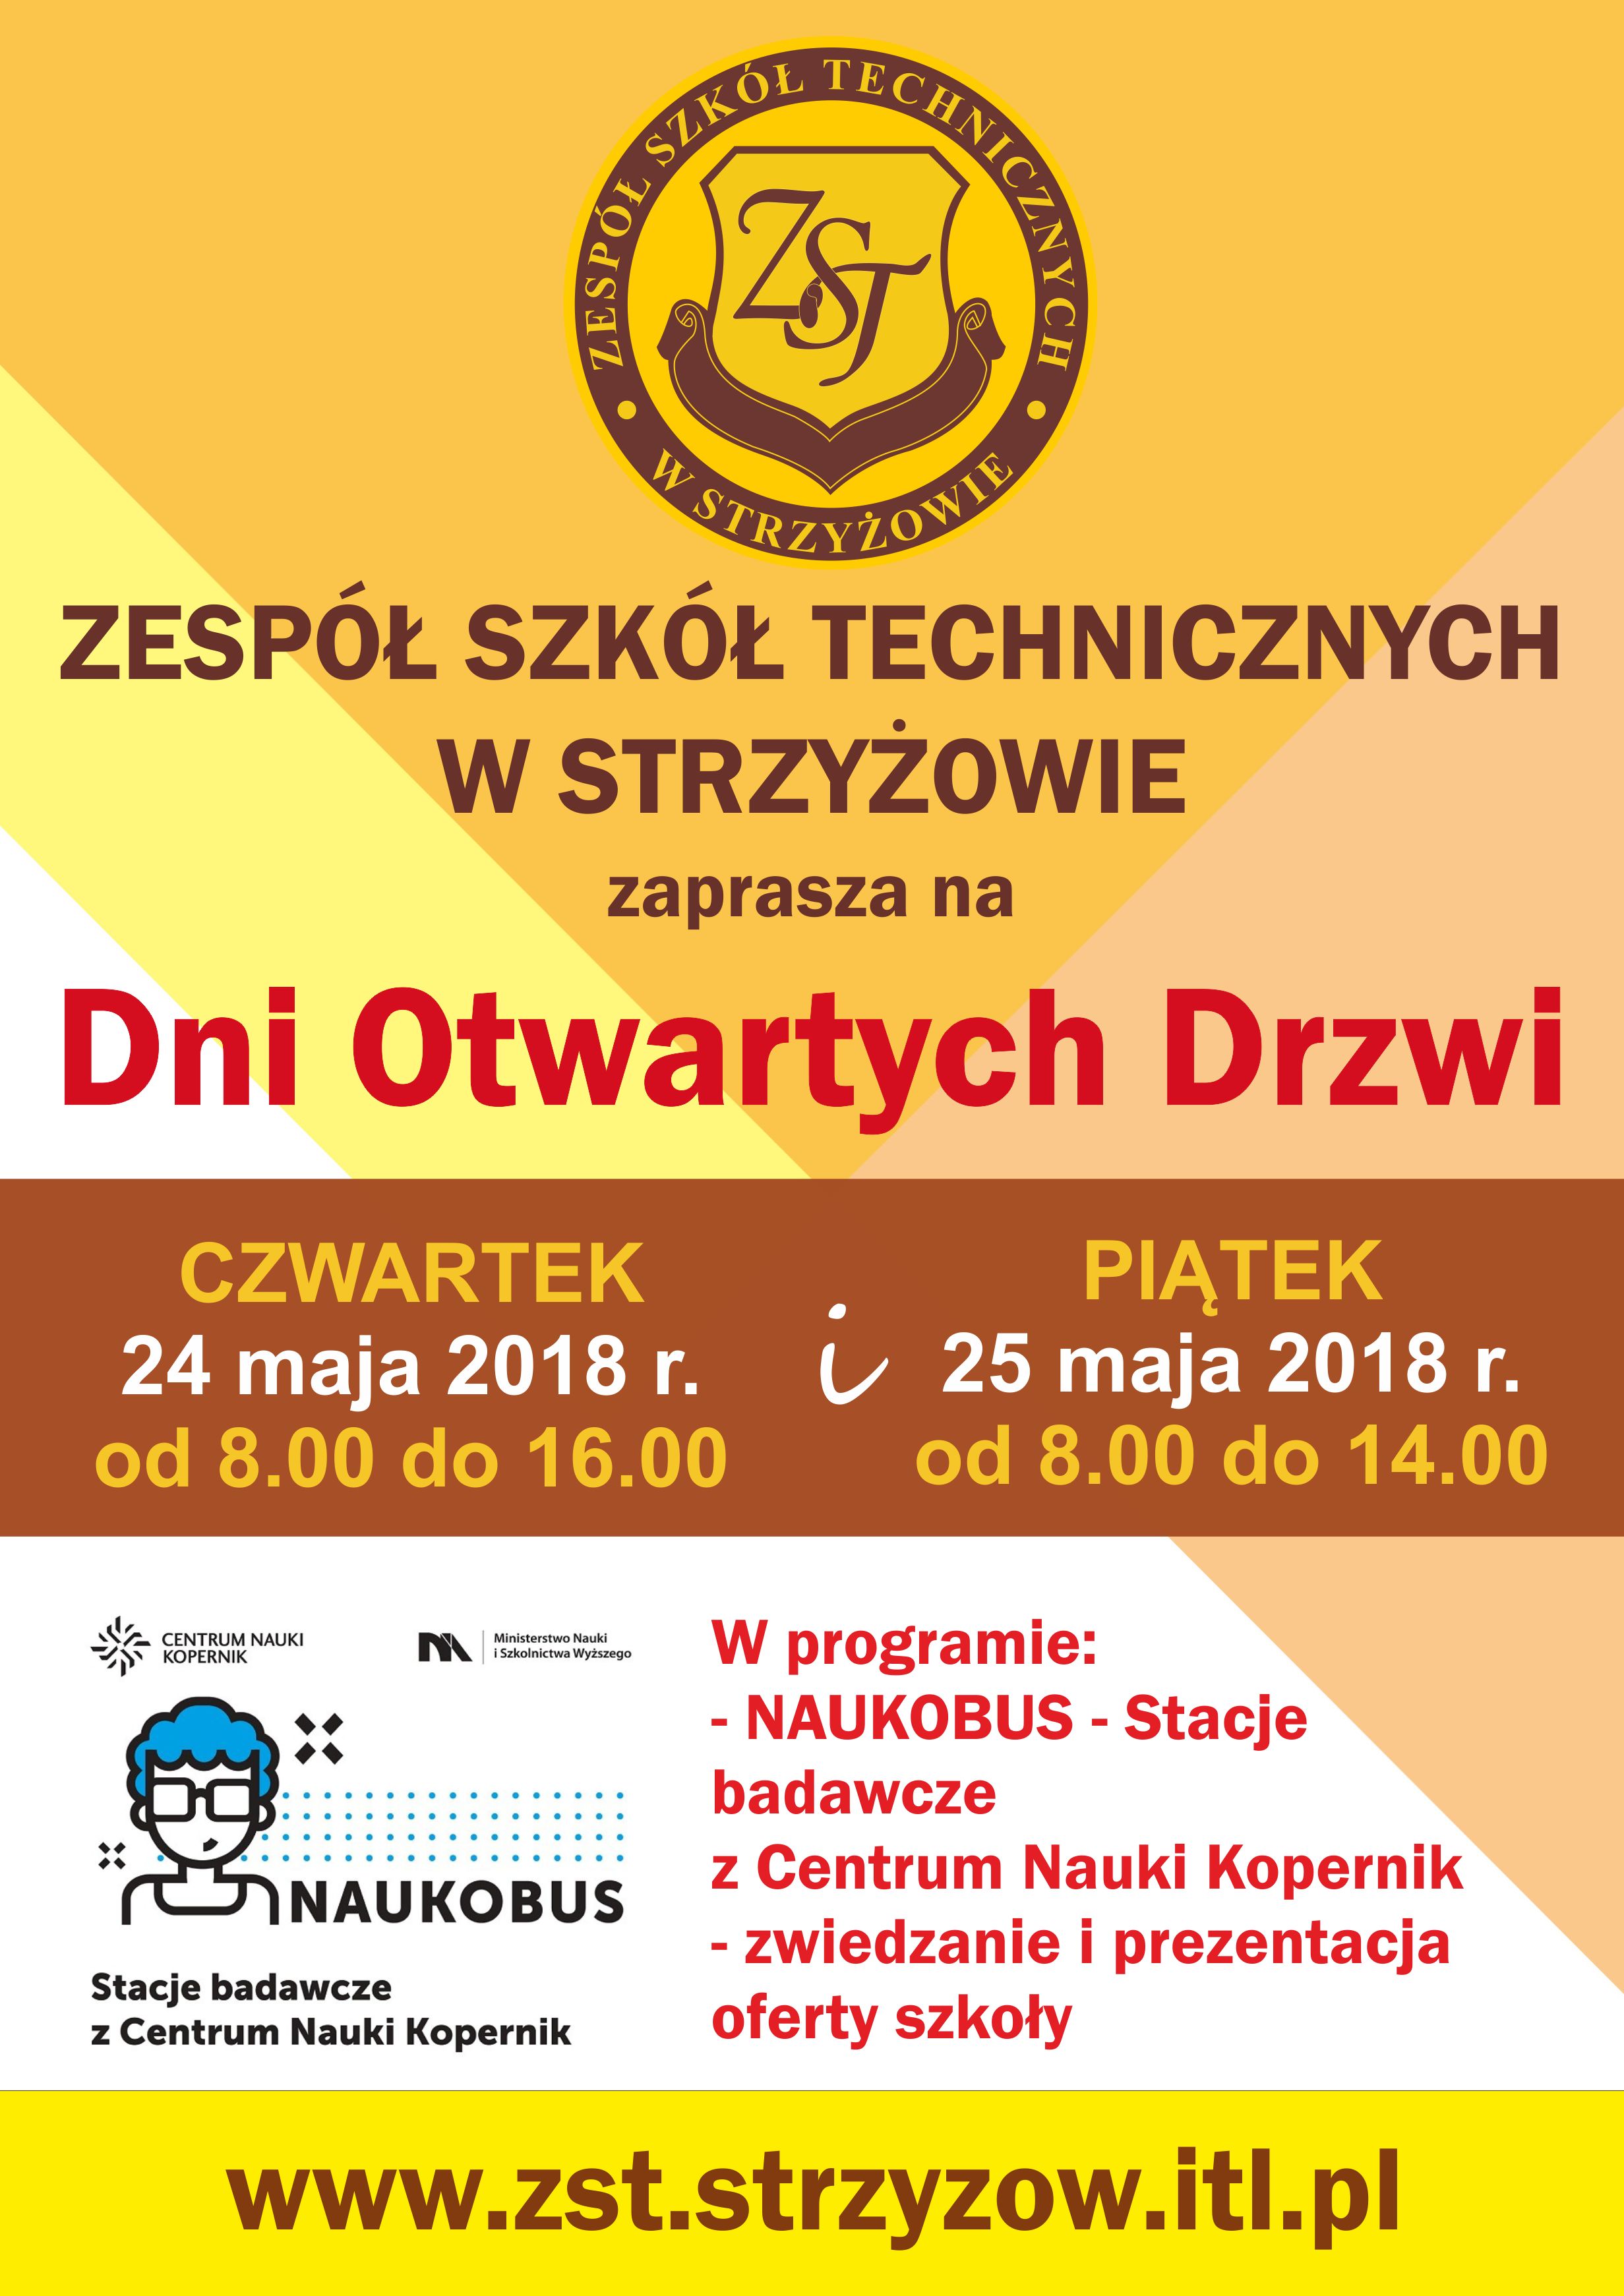 Naukobus z Centrum Nauki Kopernik w Warszawie w ramach Dni Otwartych Drzwi Zespołu Szkół Technicznych w Strzyżowie